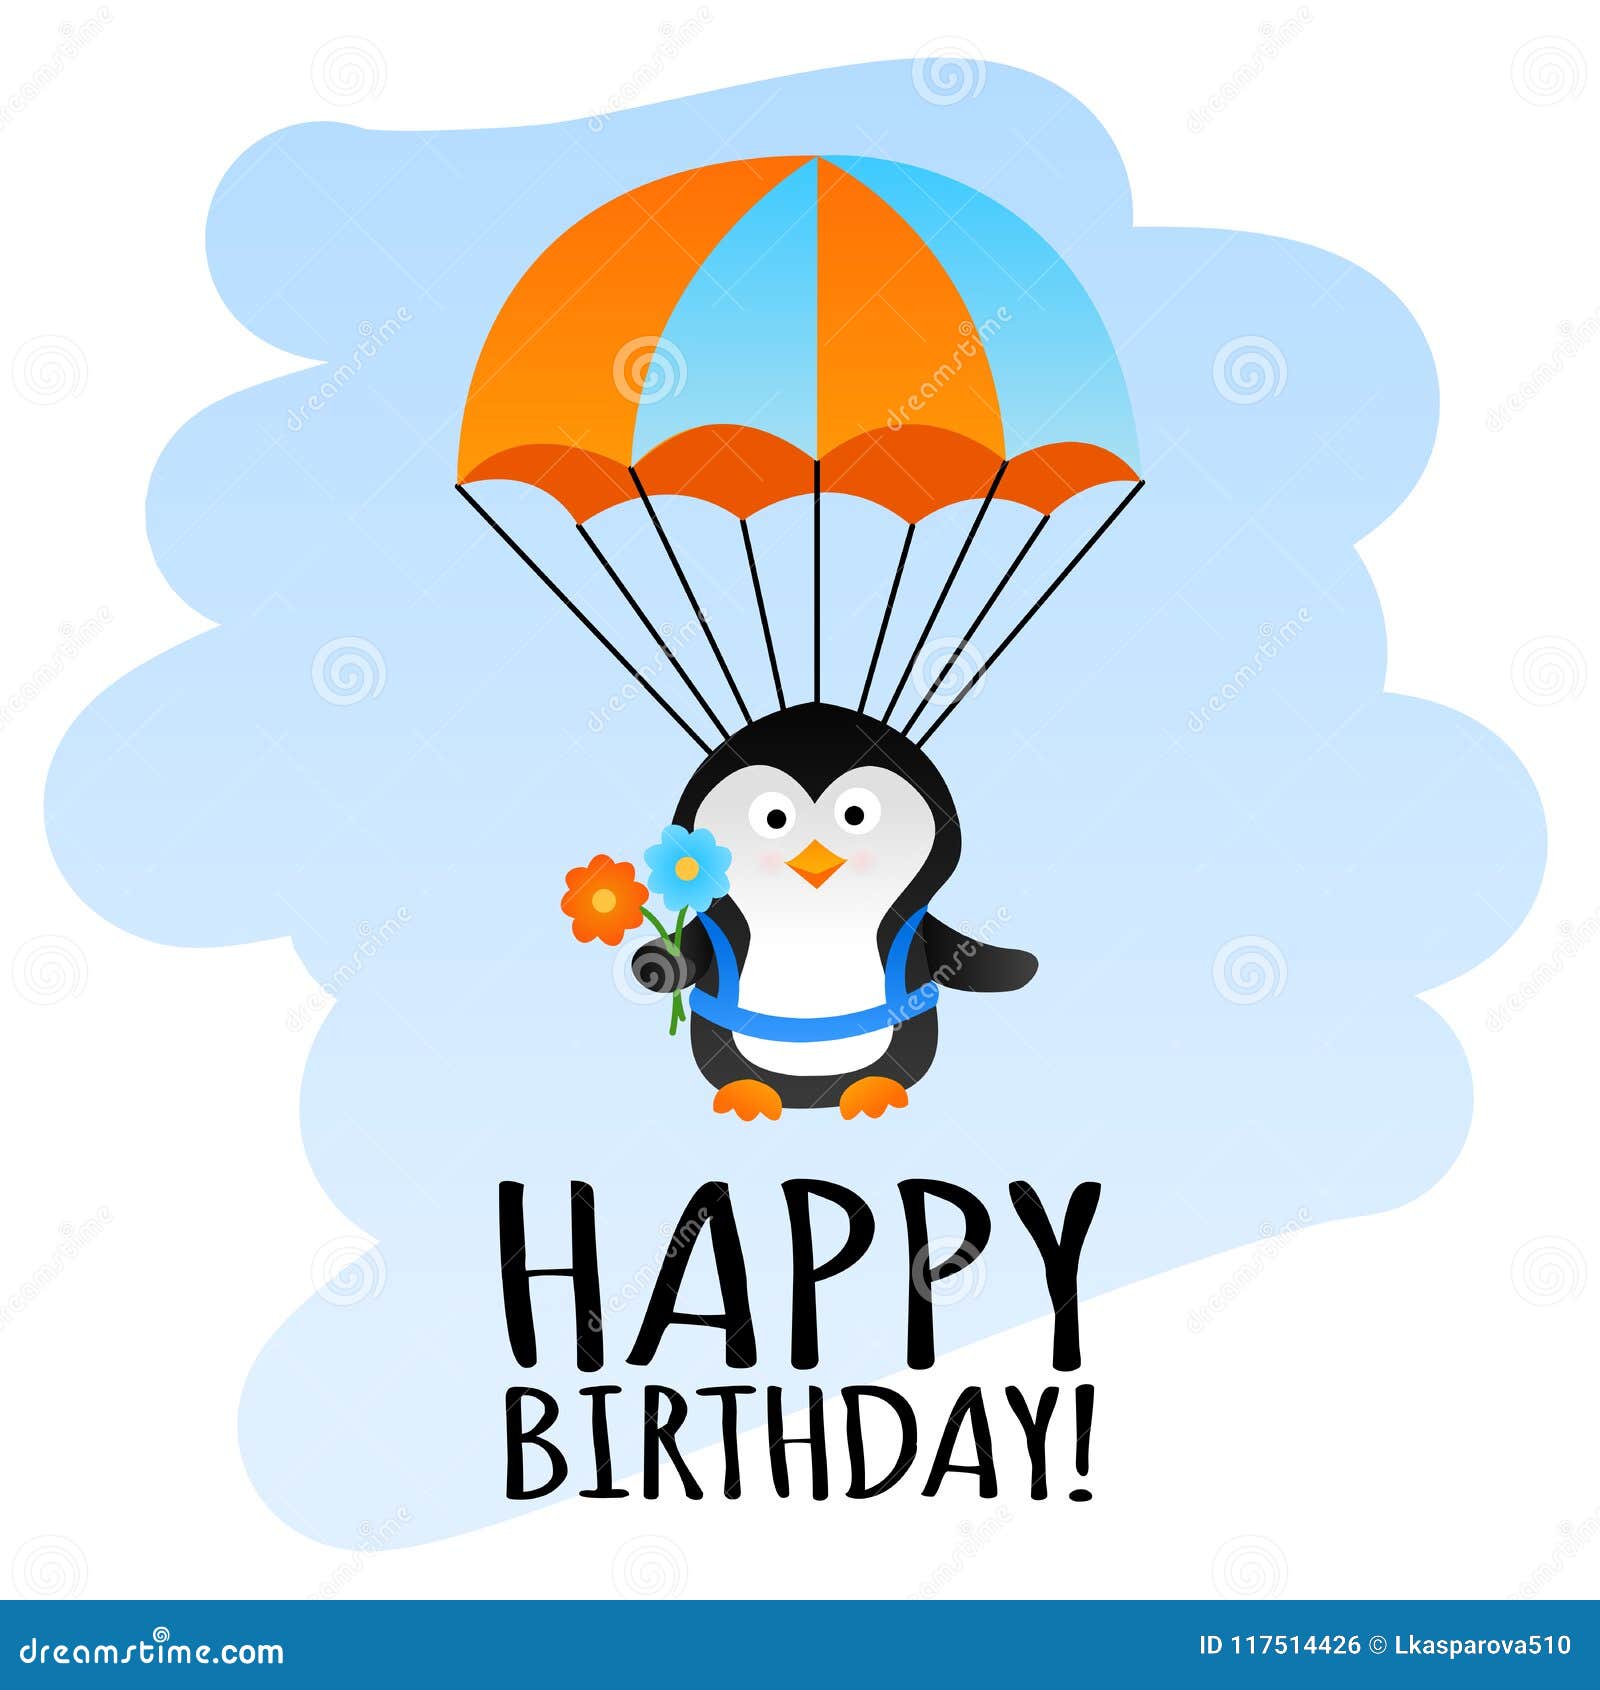 Biglietto Di Auguri Per Il Compleanno Divertente Con Il Pinguino Del Paracadute Fotografia Stock Illustrazione Di Arte Animale